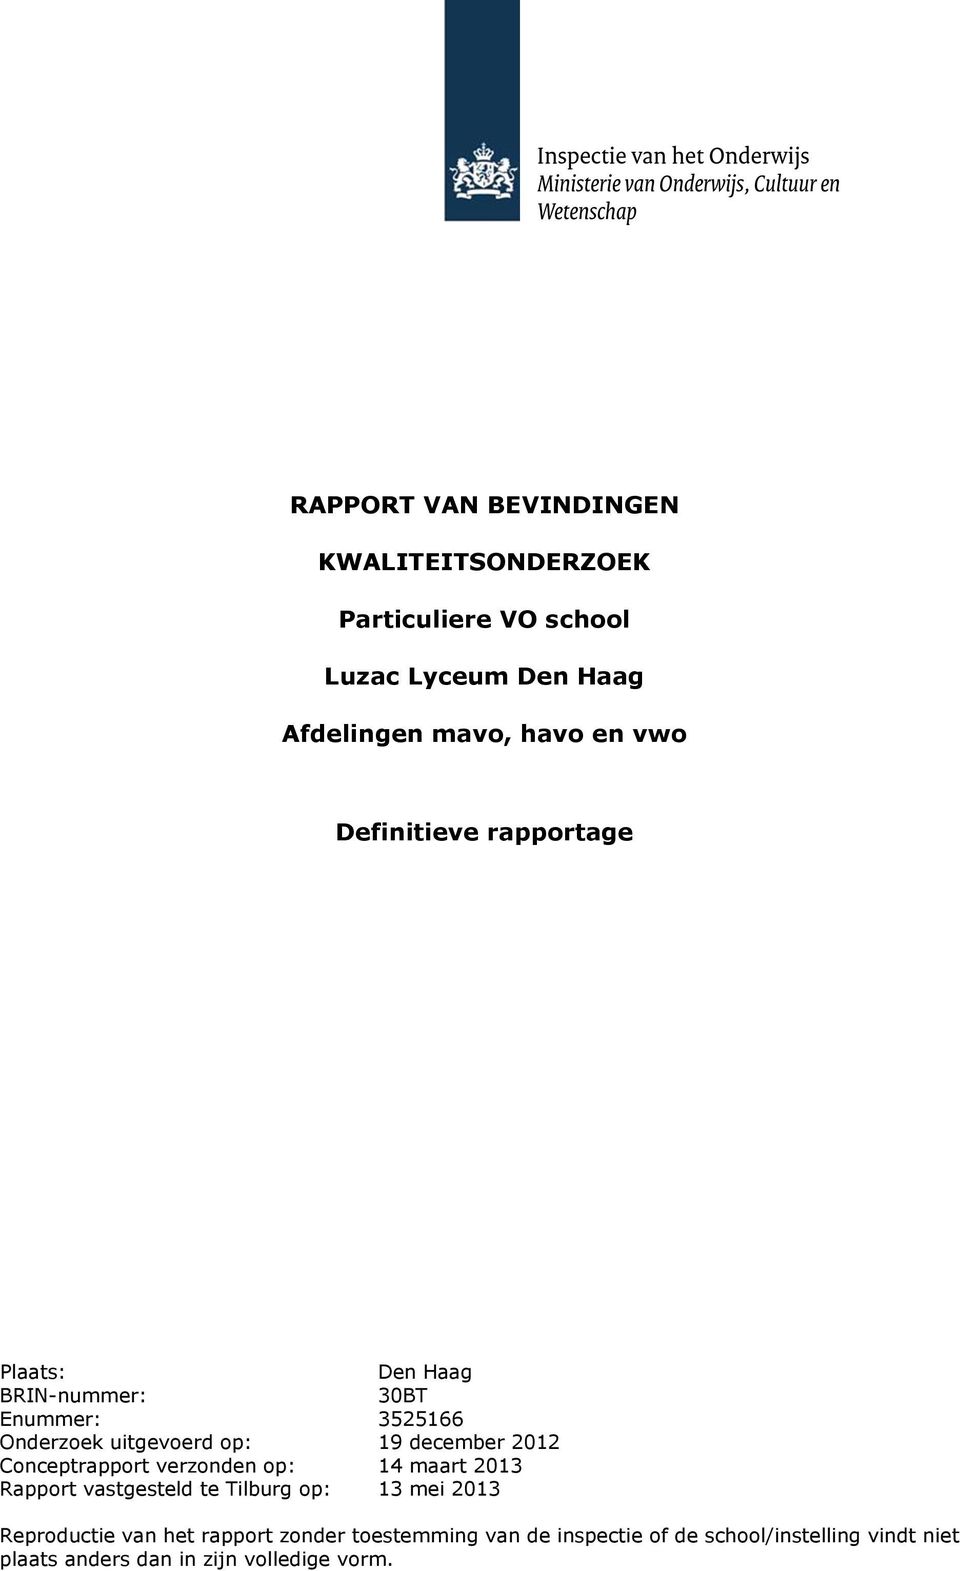 2012 Conceptrapport verzonden op: 14 maart 2013 Rapport vastgesteld te Tilburg op: 13 mei 2013 Reproductie van het